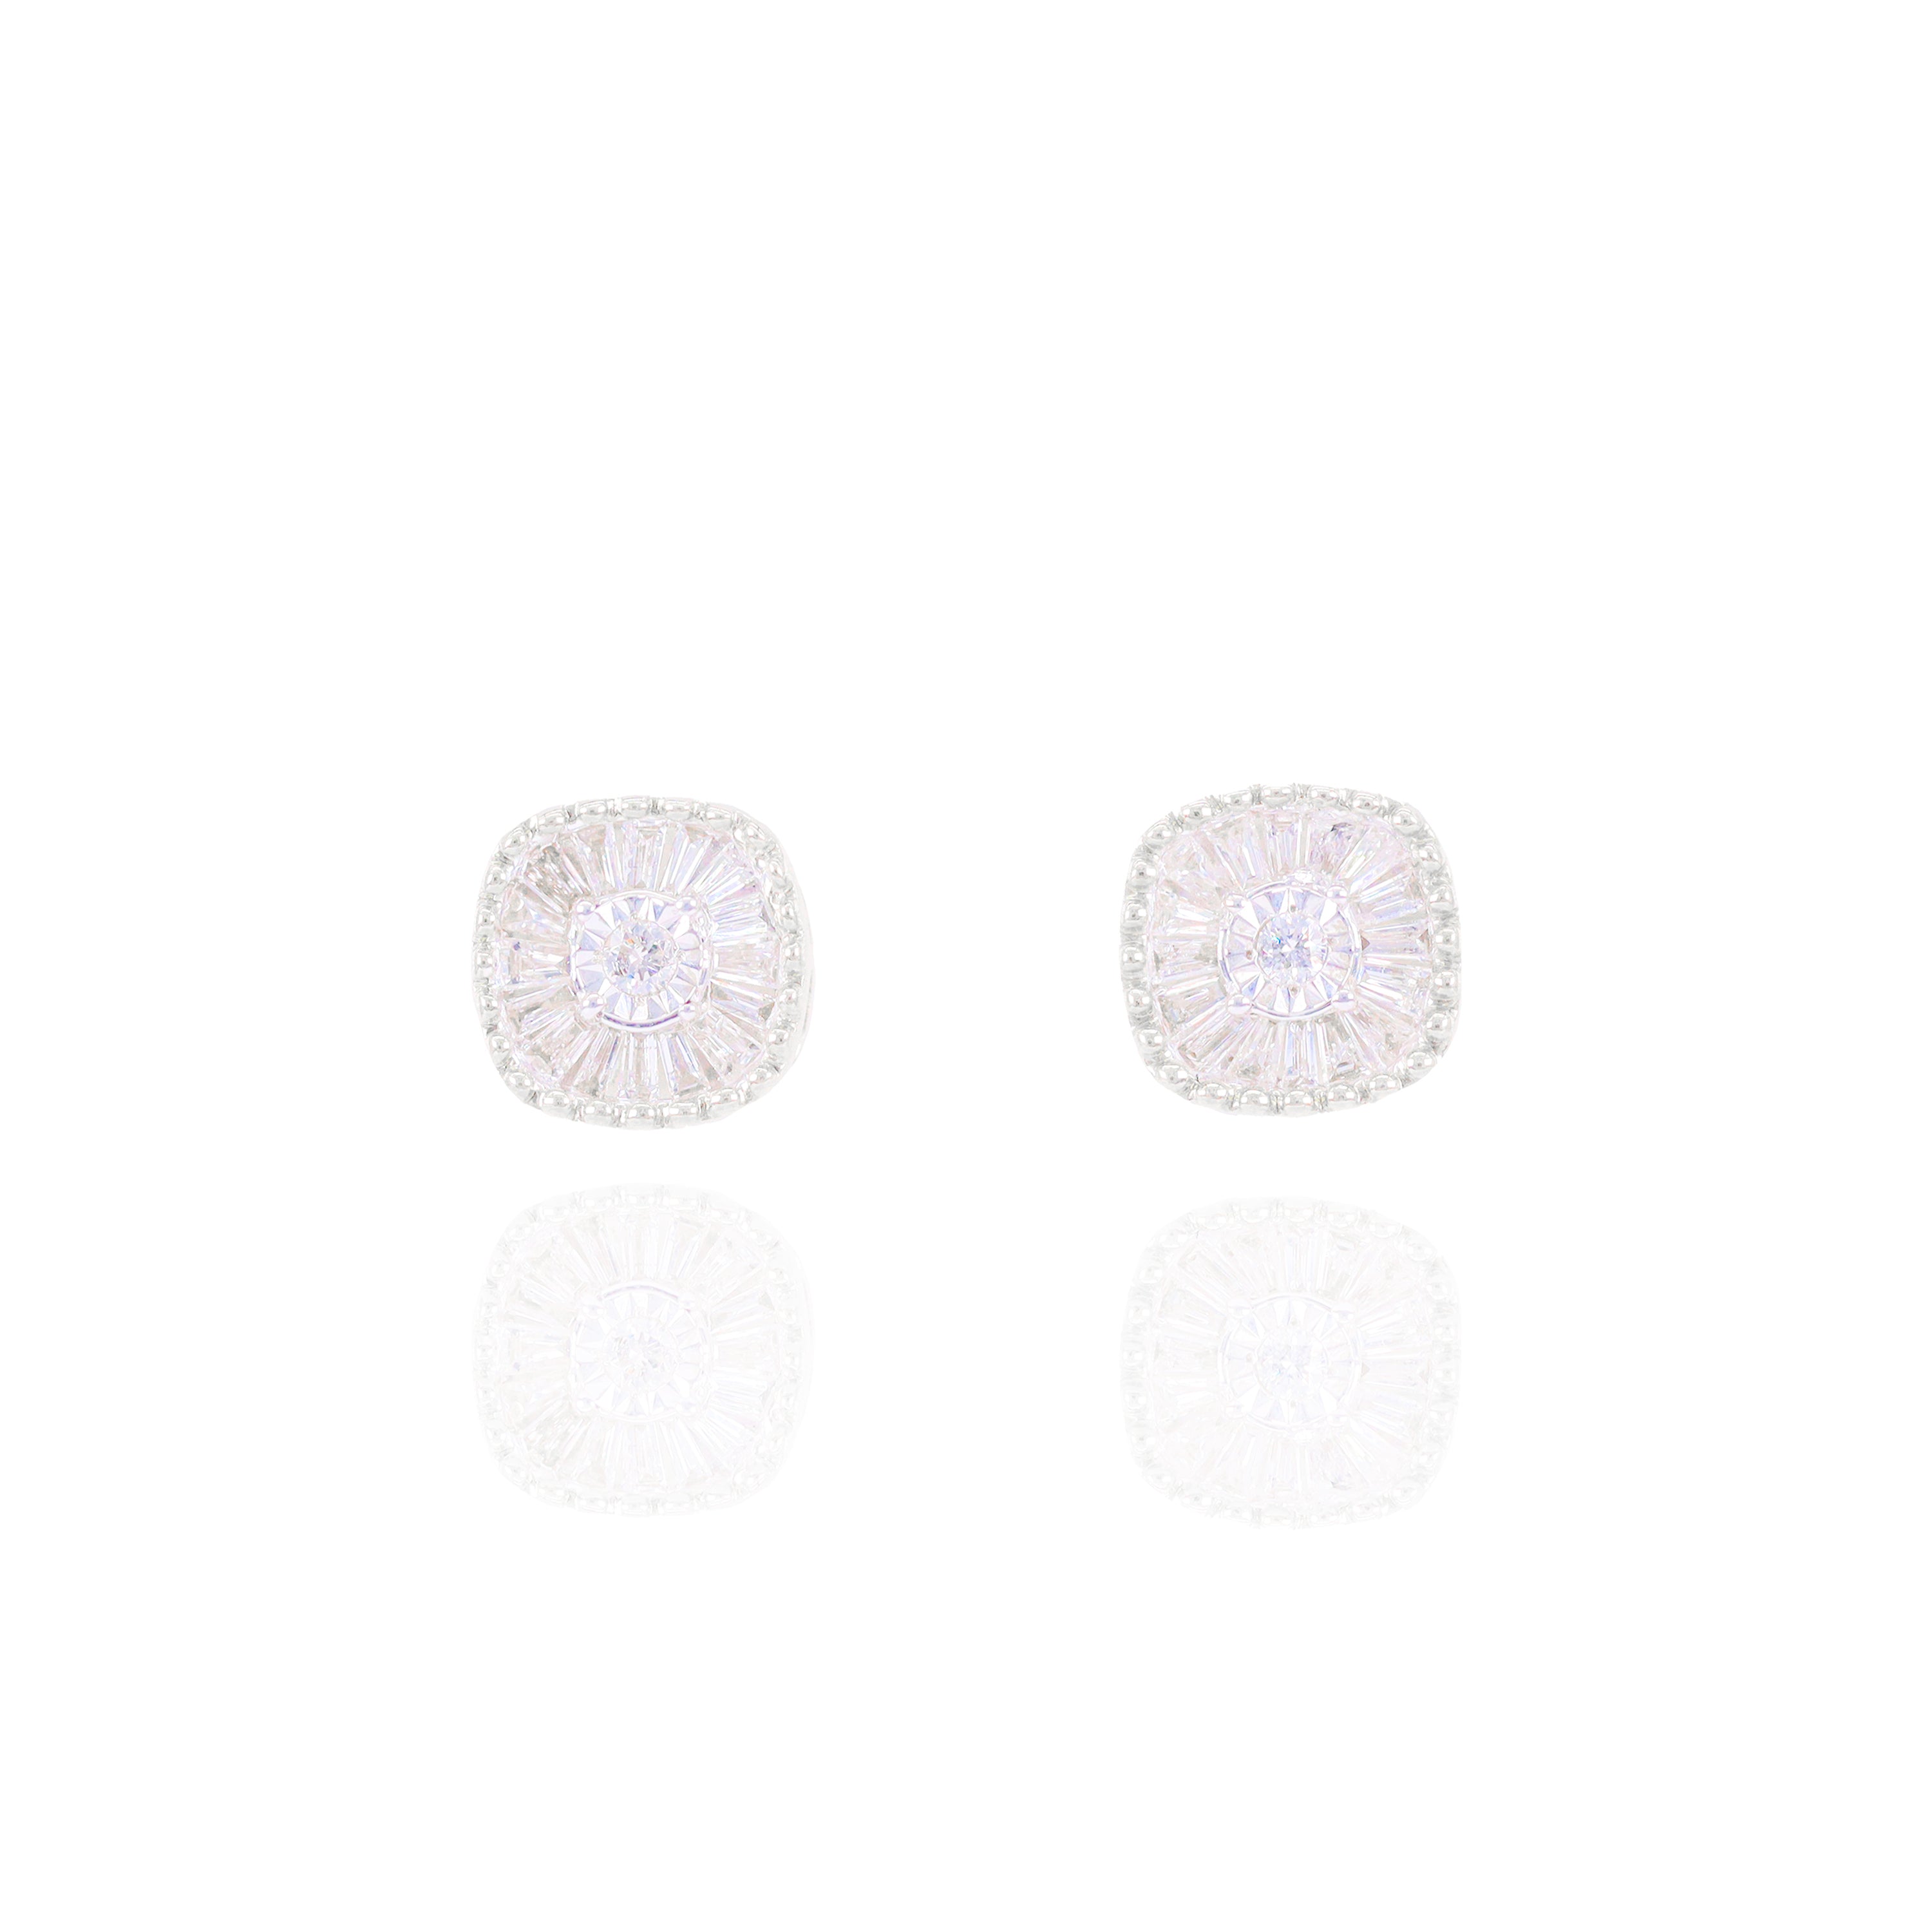 Channel Set Baguette Cluster Diamond Earrings